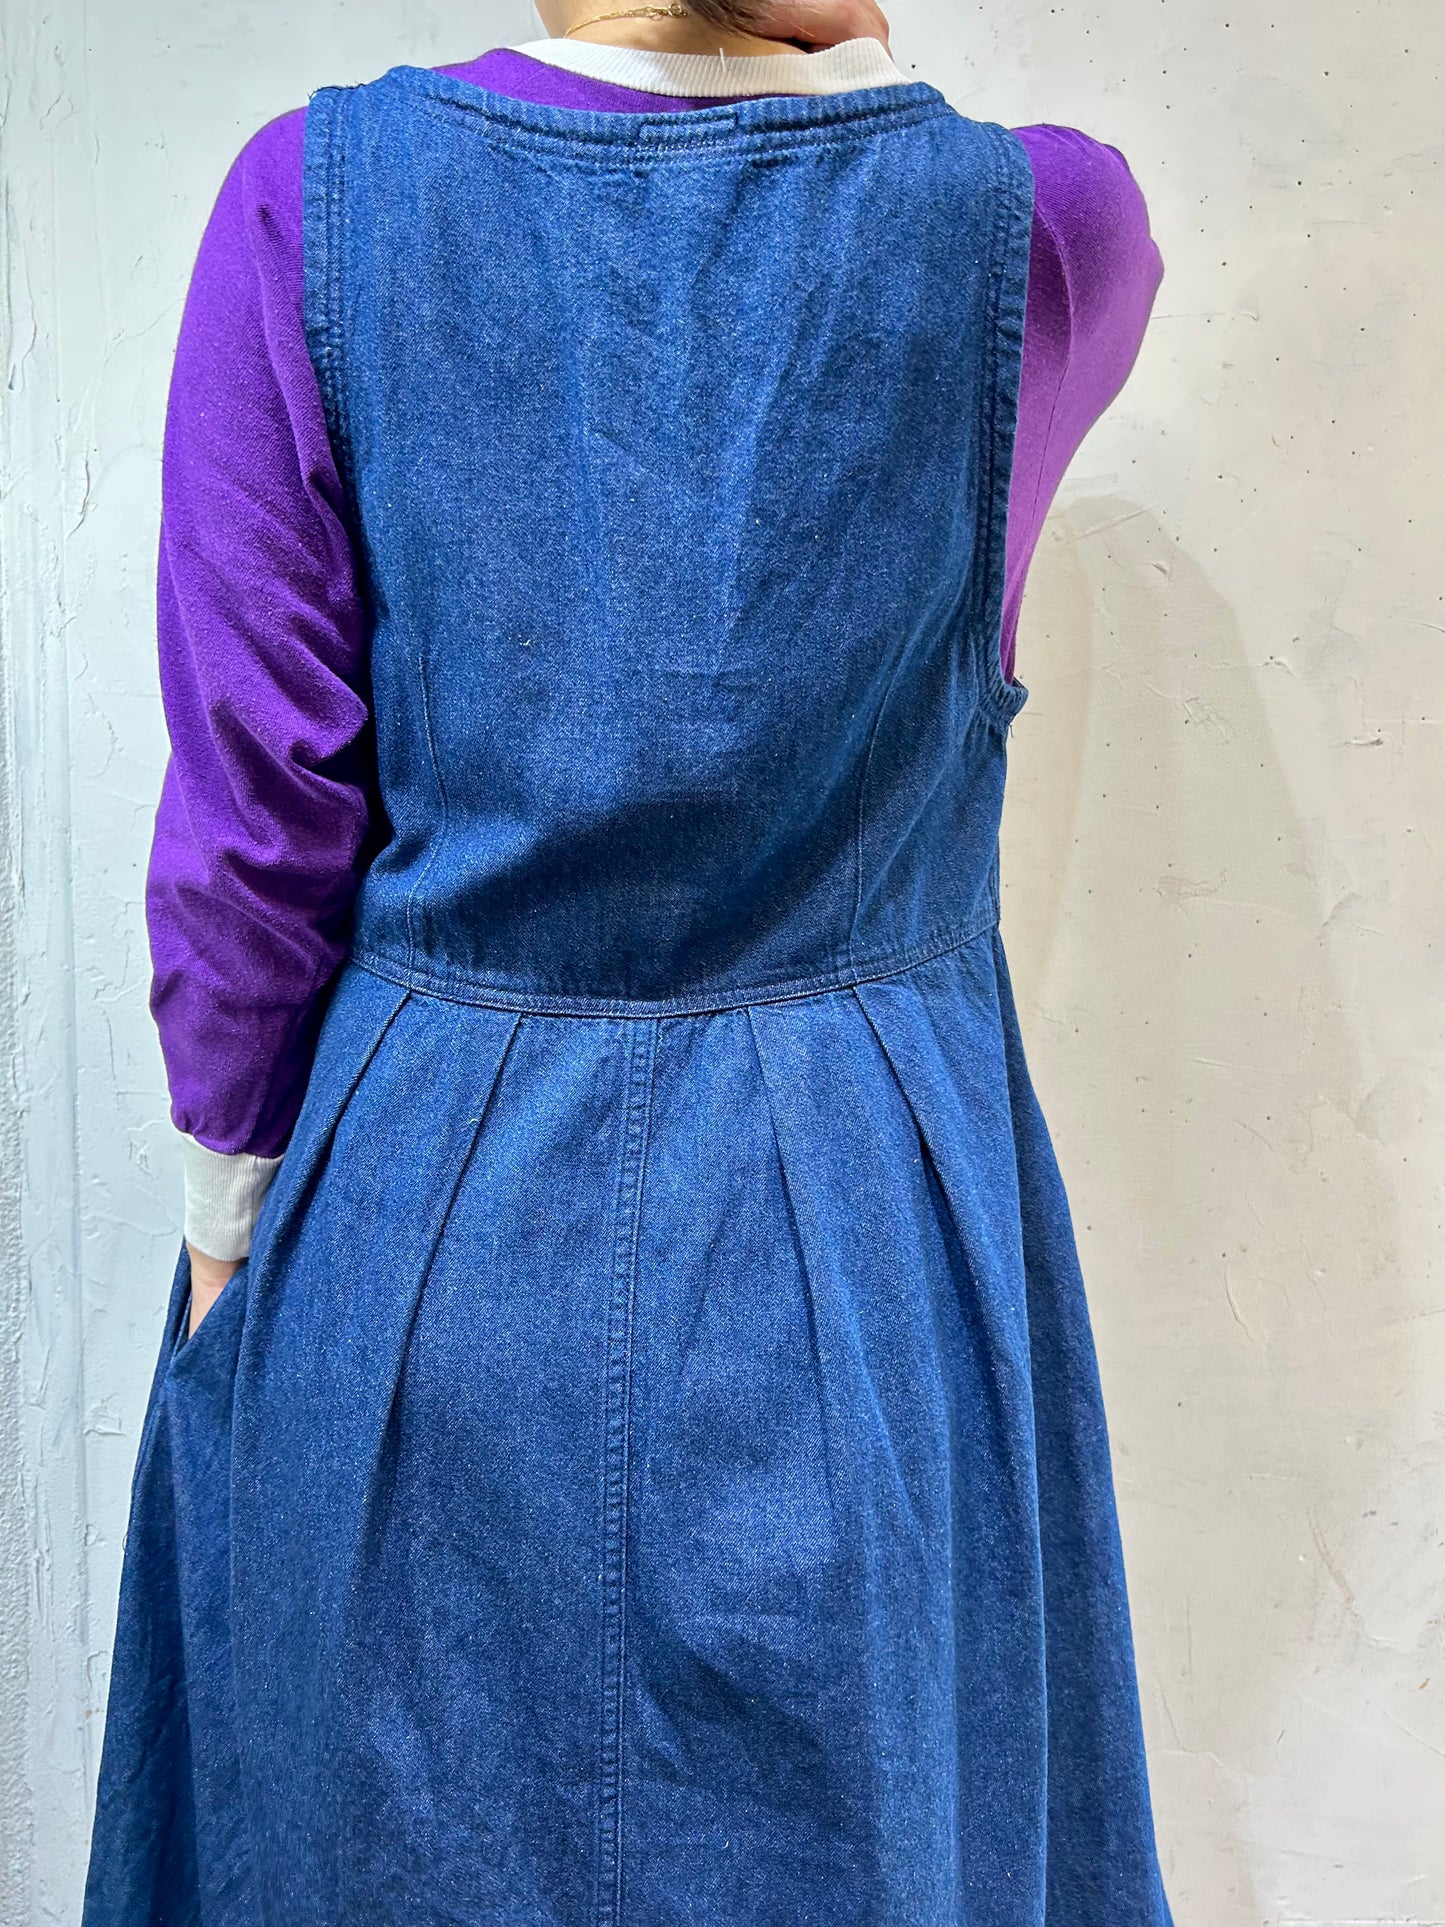 Vintage Denim Over Dress [I25036]